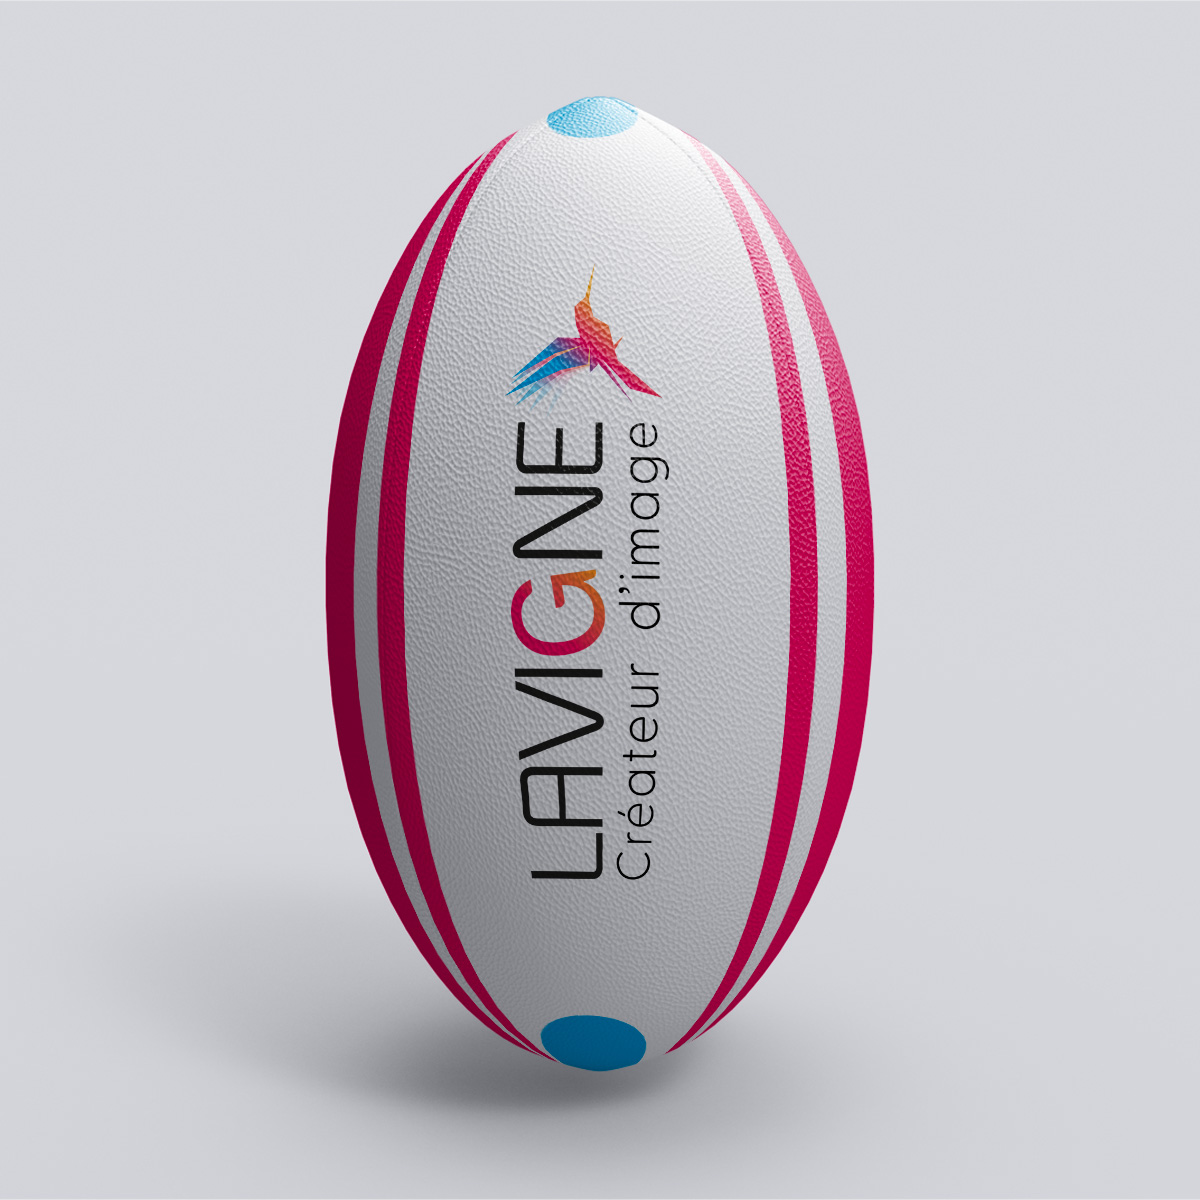 Ballon de rugby personnalisé - Lavigne Eprint